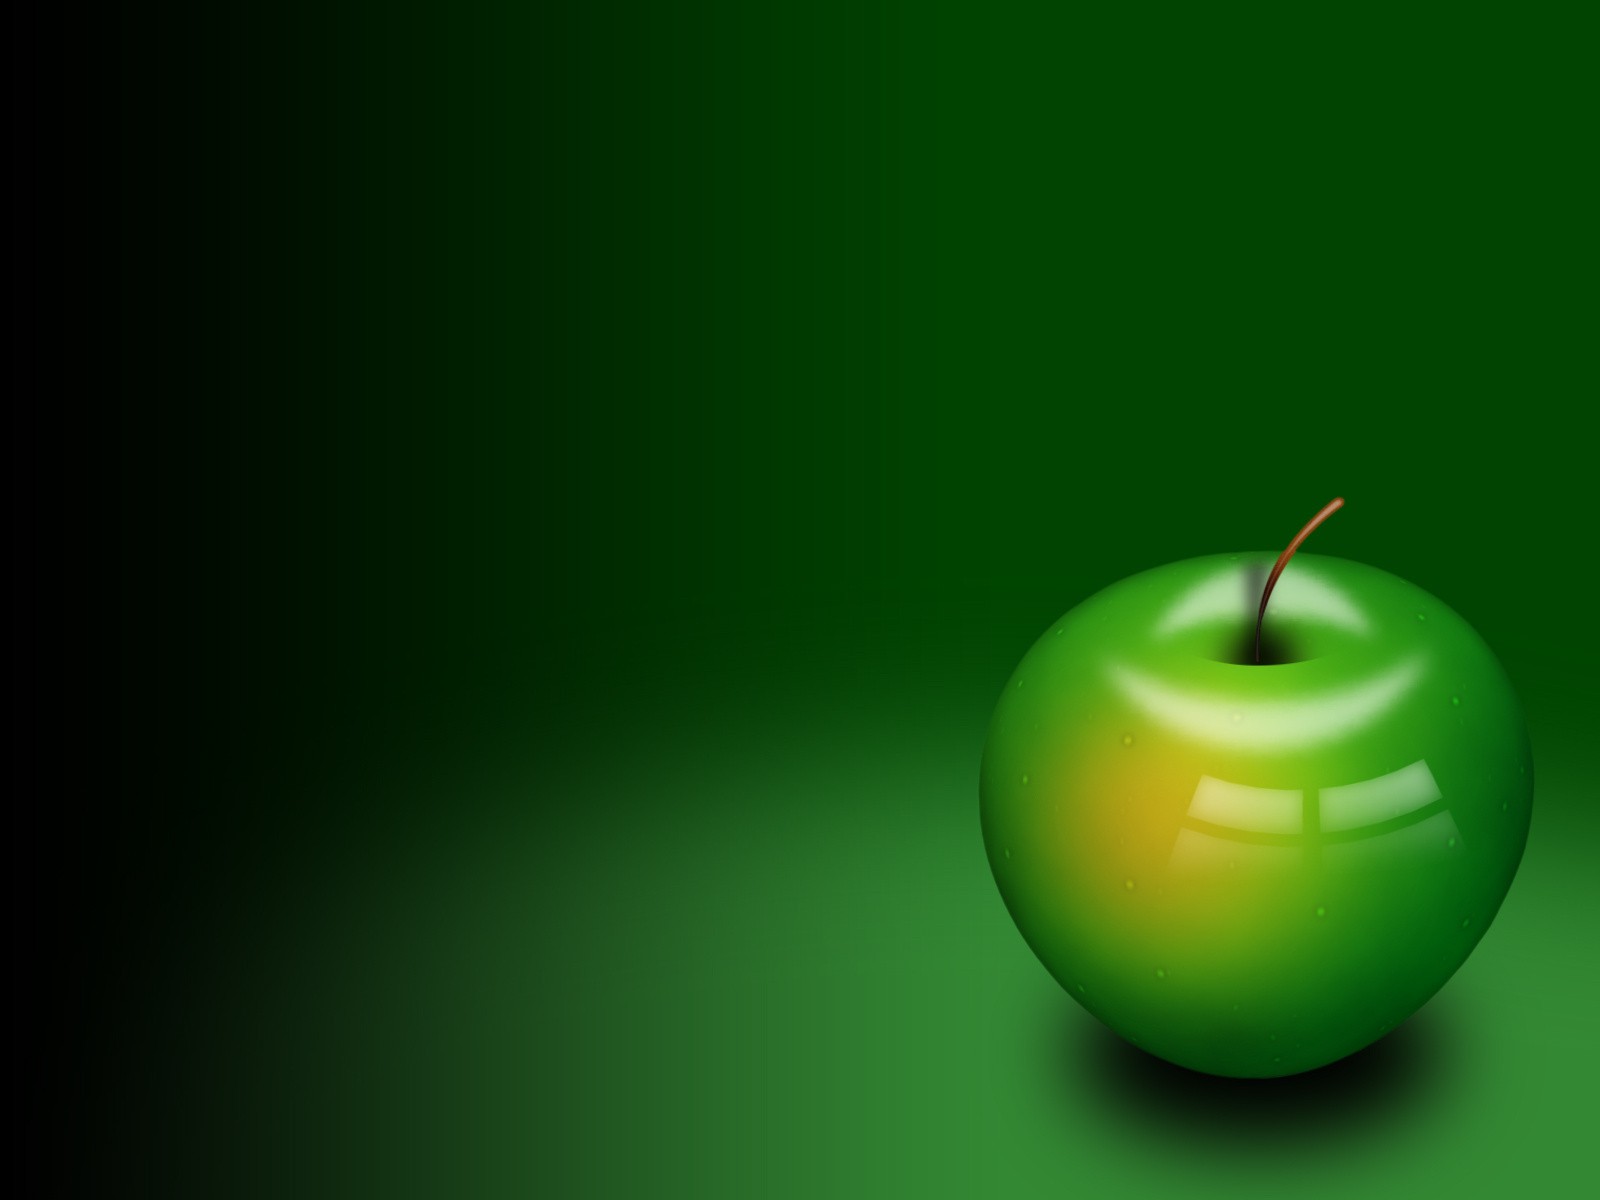 Hãy chiêm ngưỡng một tác phẩm nghệ thuật thật tuyệt vời với nền xanh tươi của táo trong tấm hình này. Những quả táo xanh được sắp xếp một cách độc đáo trên nền trắng tạo nên một tổng thể thật đẹp mắt và tinh tế. Bạn sẽ không thể rời mắt khỏi nó!